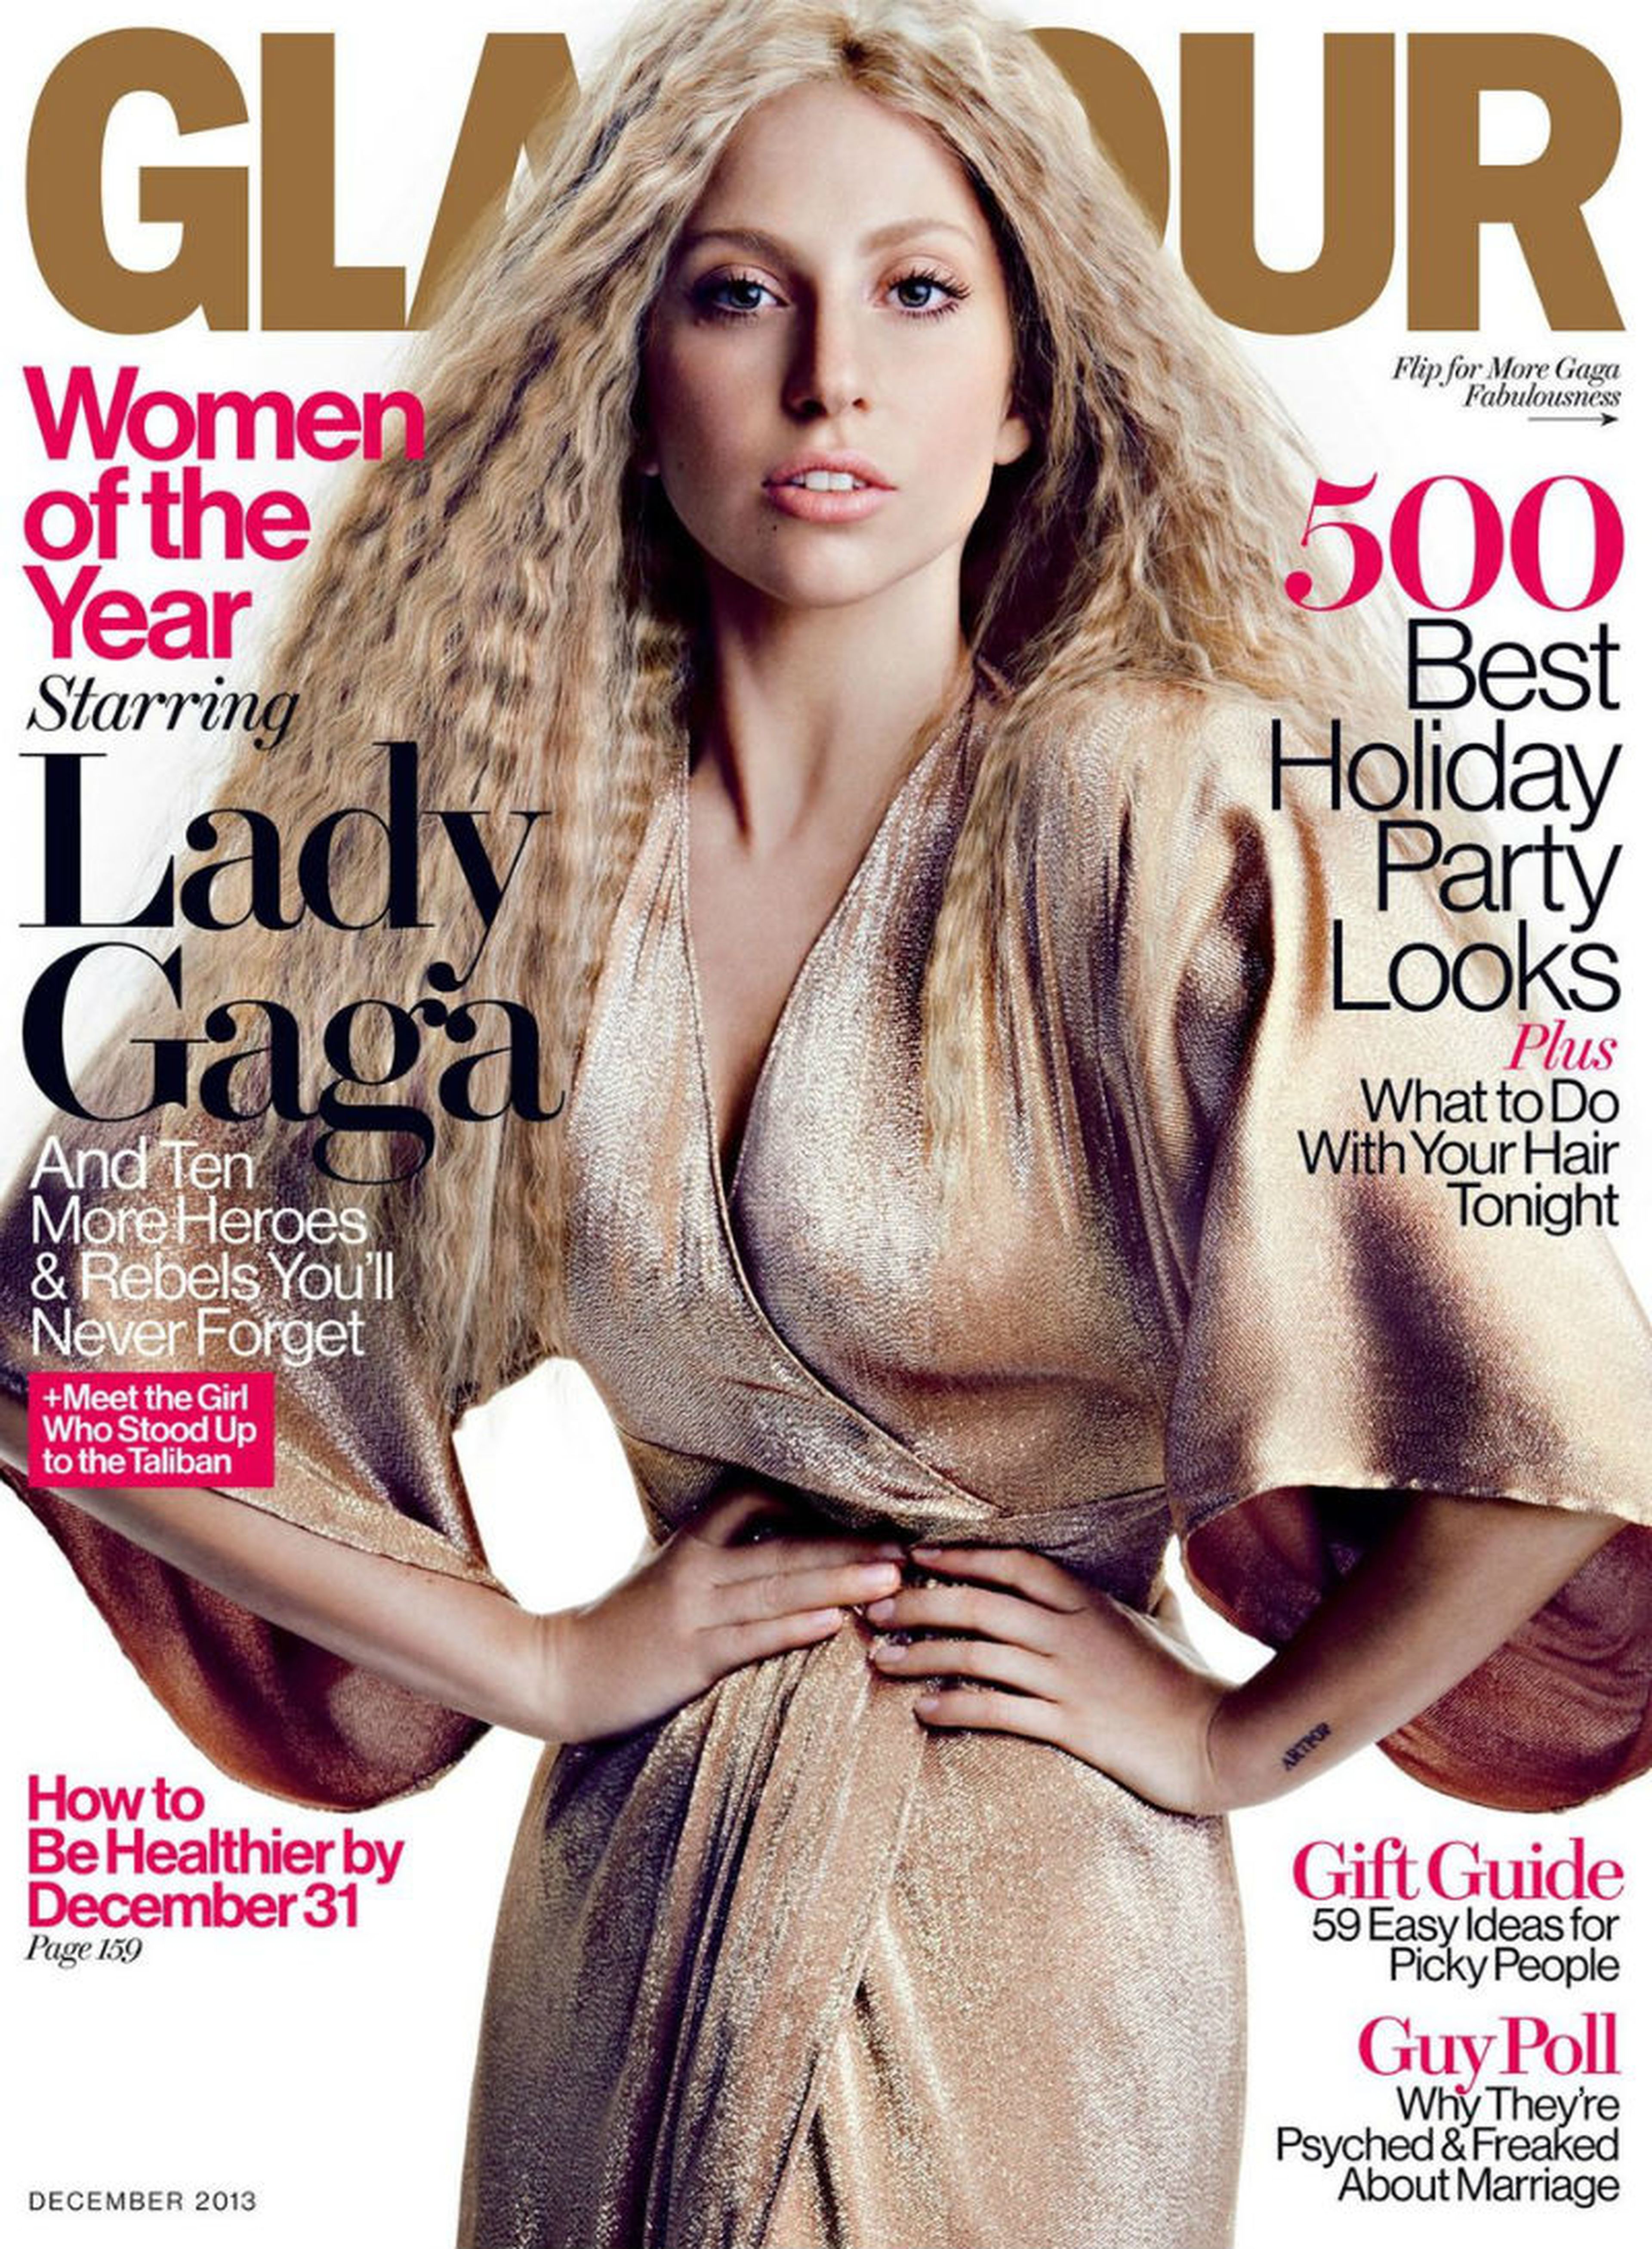 A Lady Gaga no le gustó esta portada de Glamour de 2013